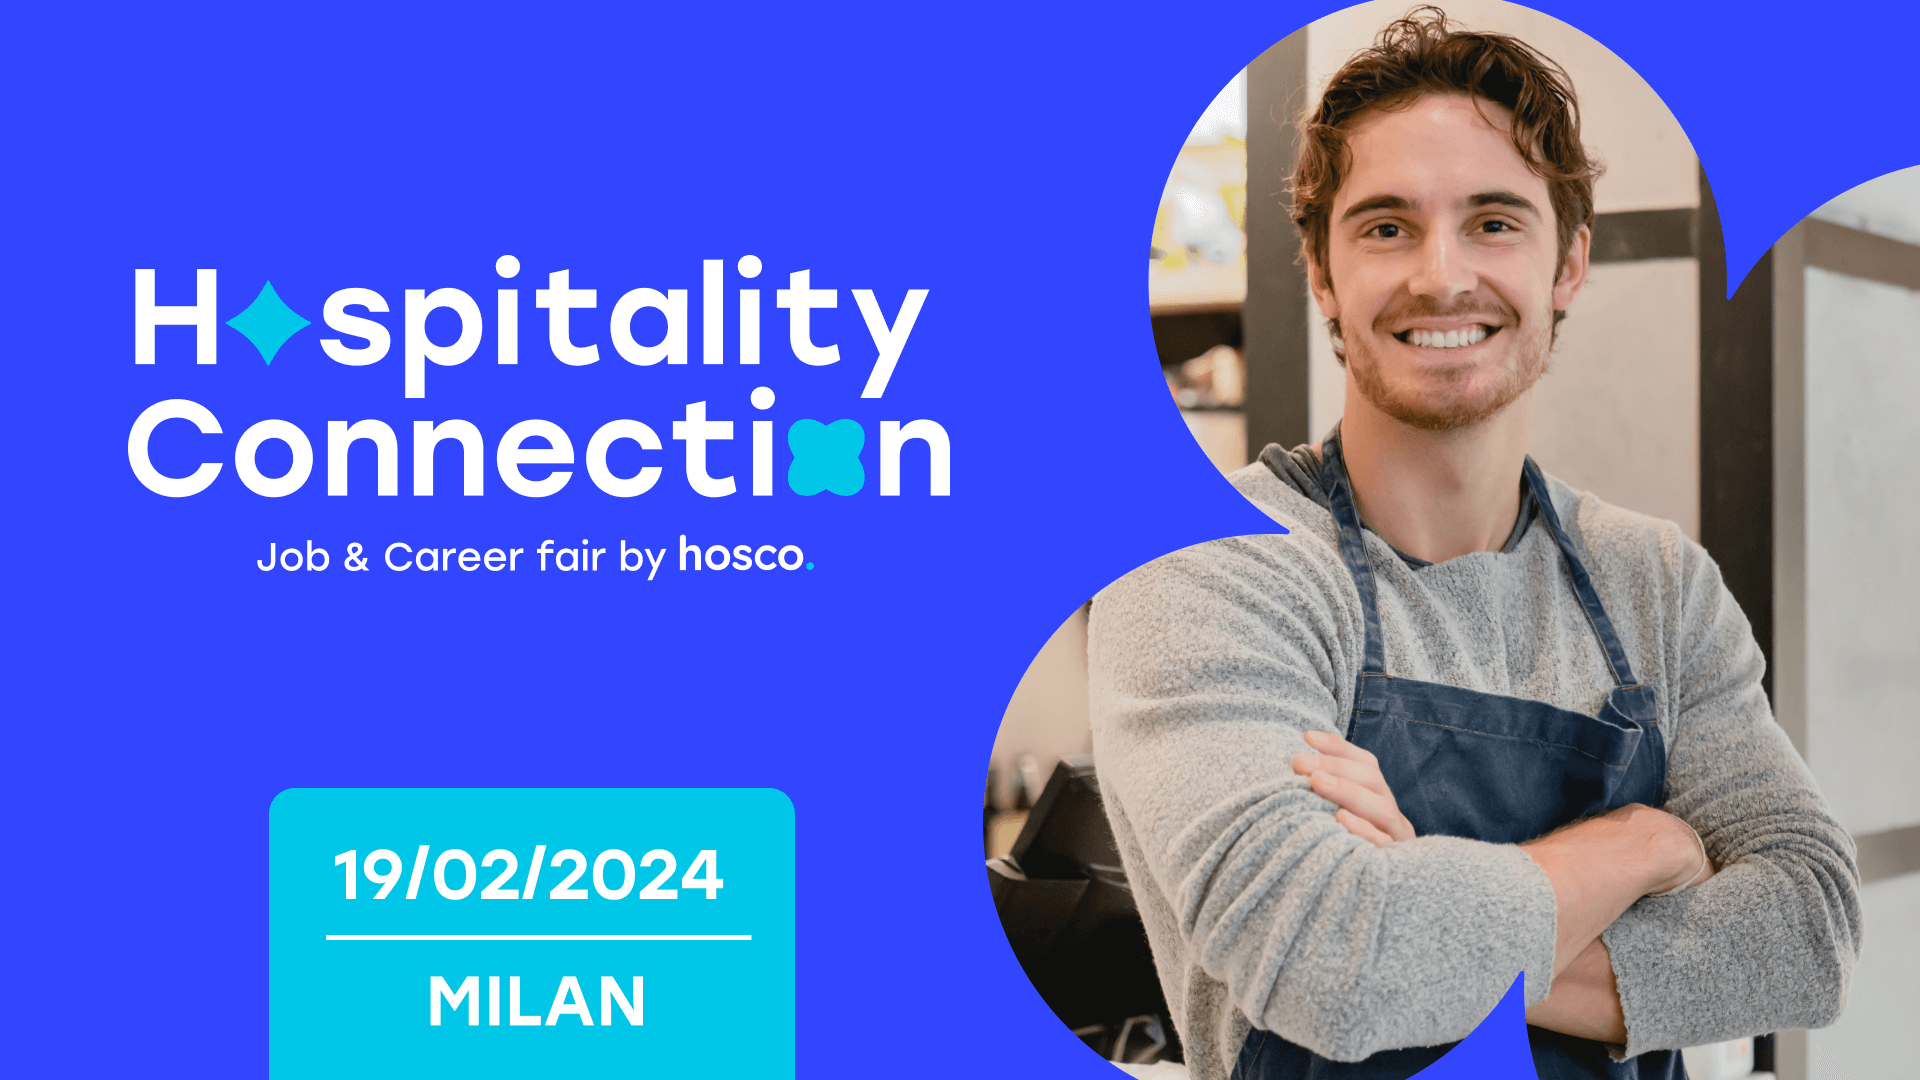 Hospitality Connection Milano: la fiera del lavoro leader nel settore alberghiero di lusso